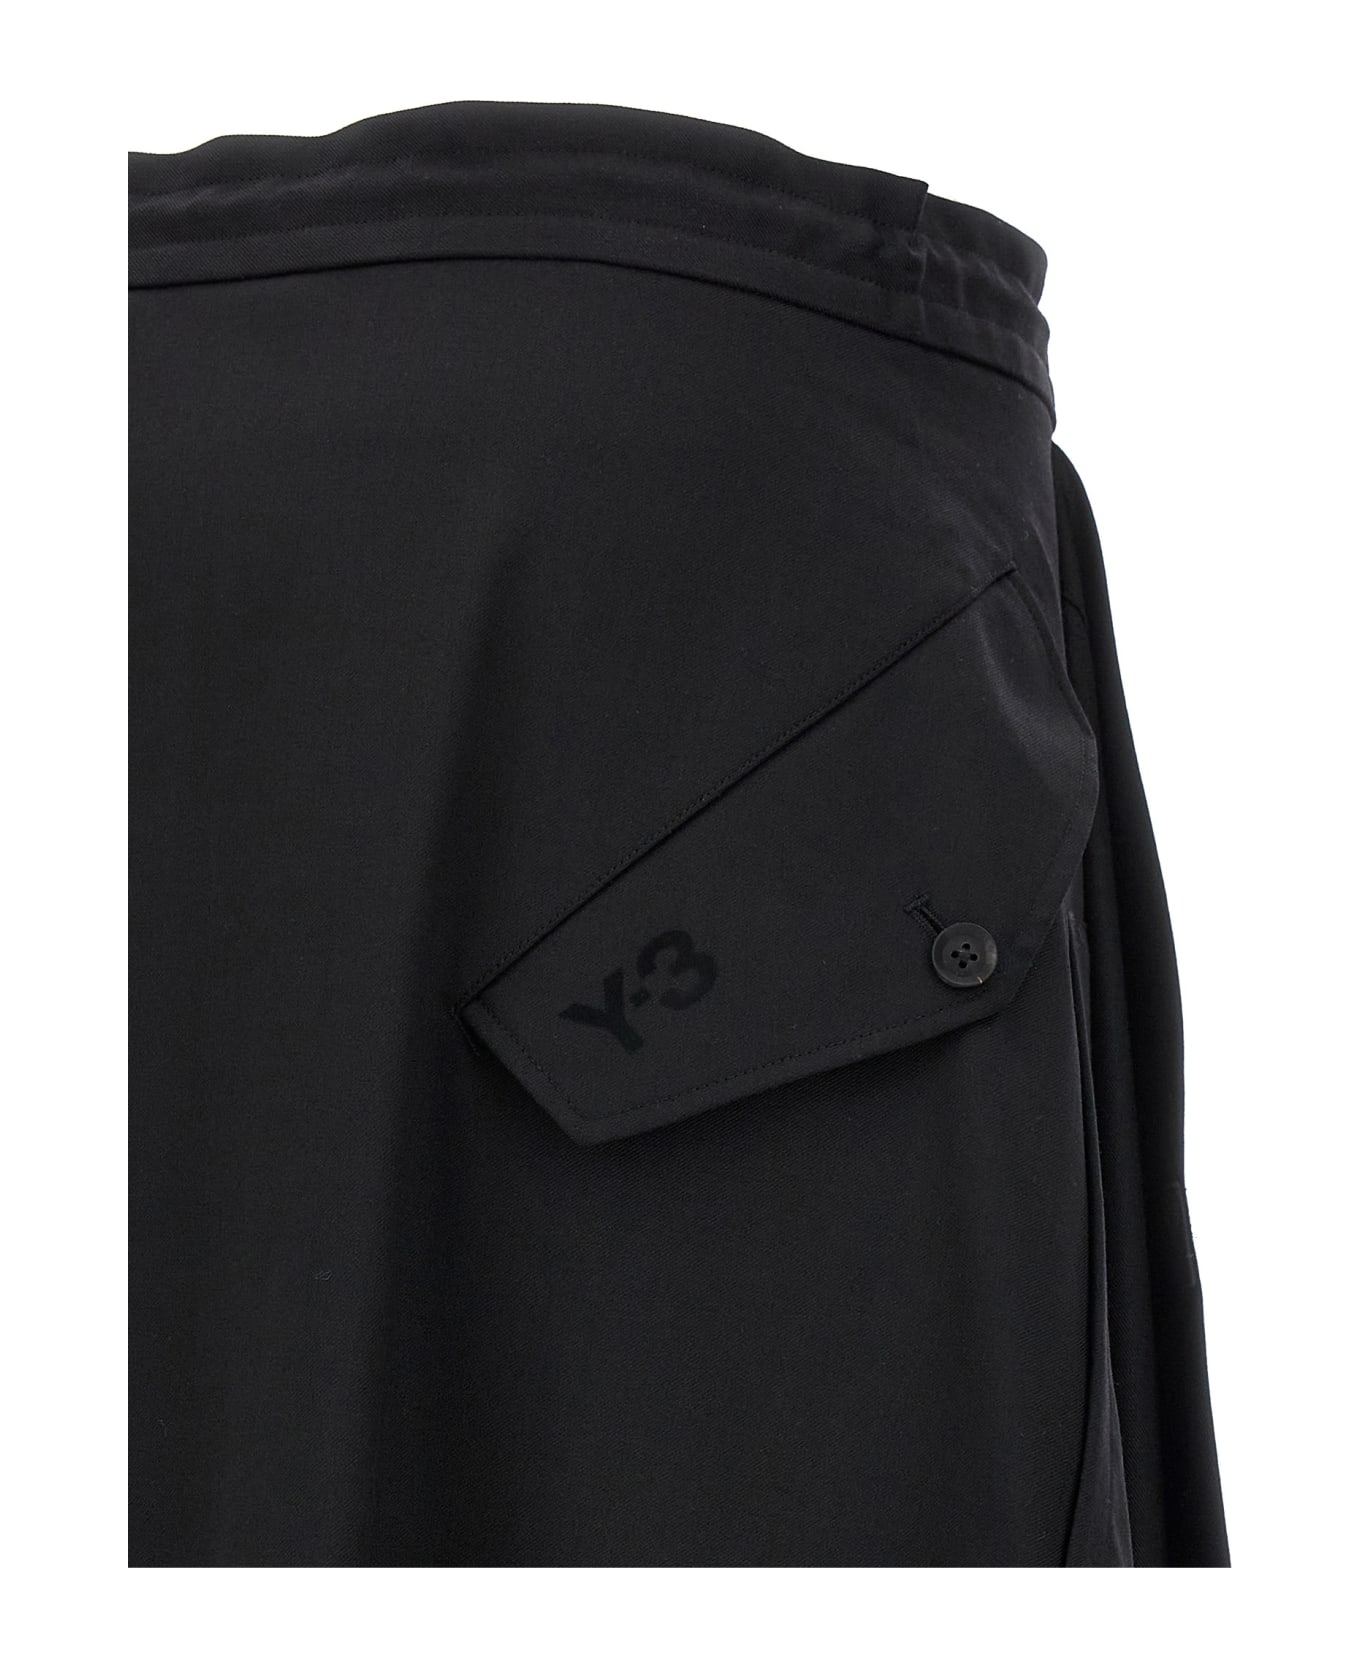 Y-3 Asymmetrical Skirt